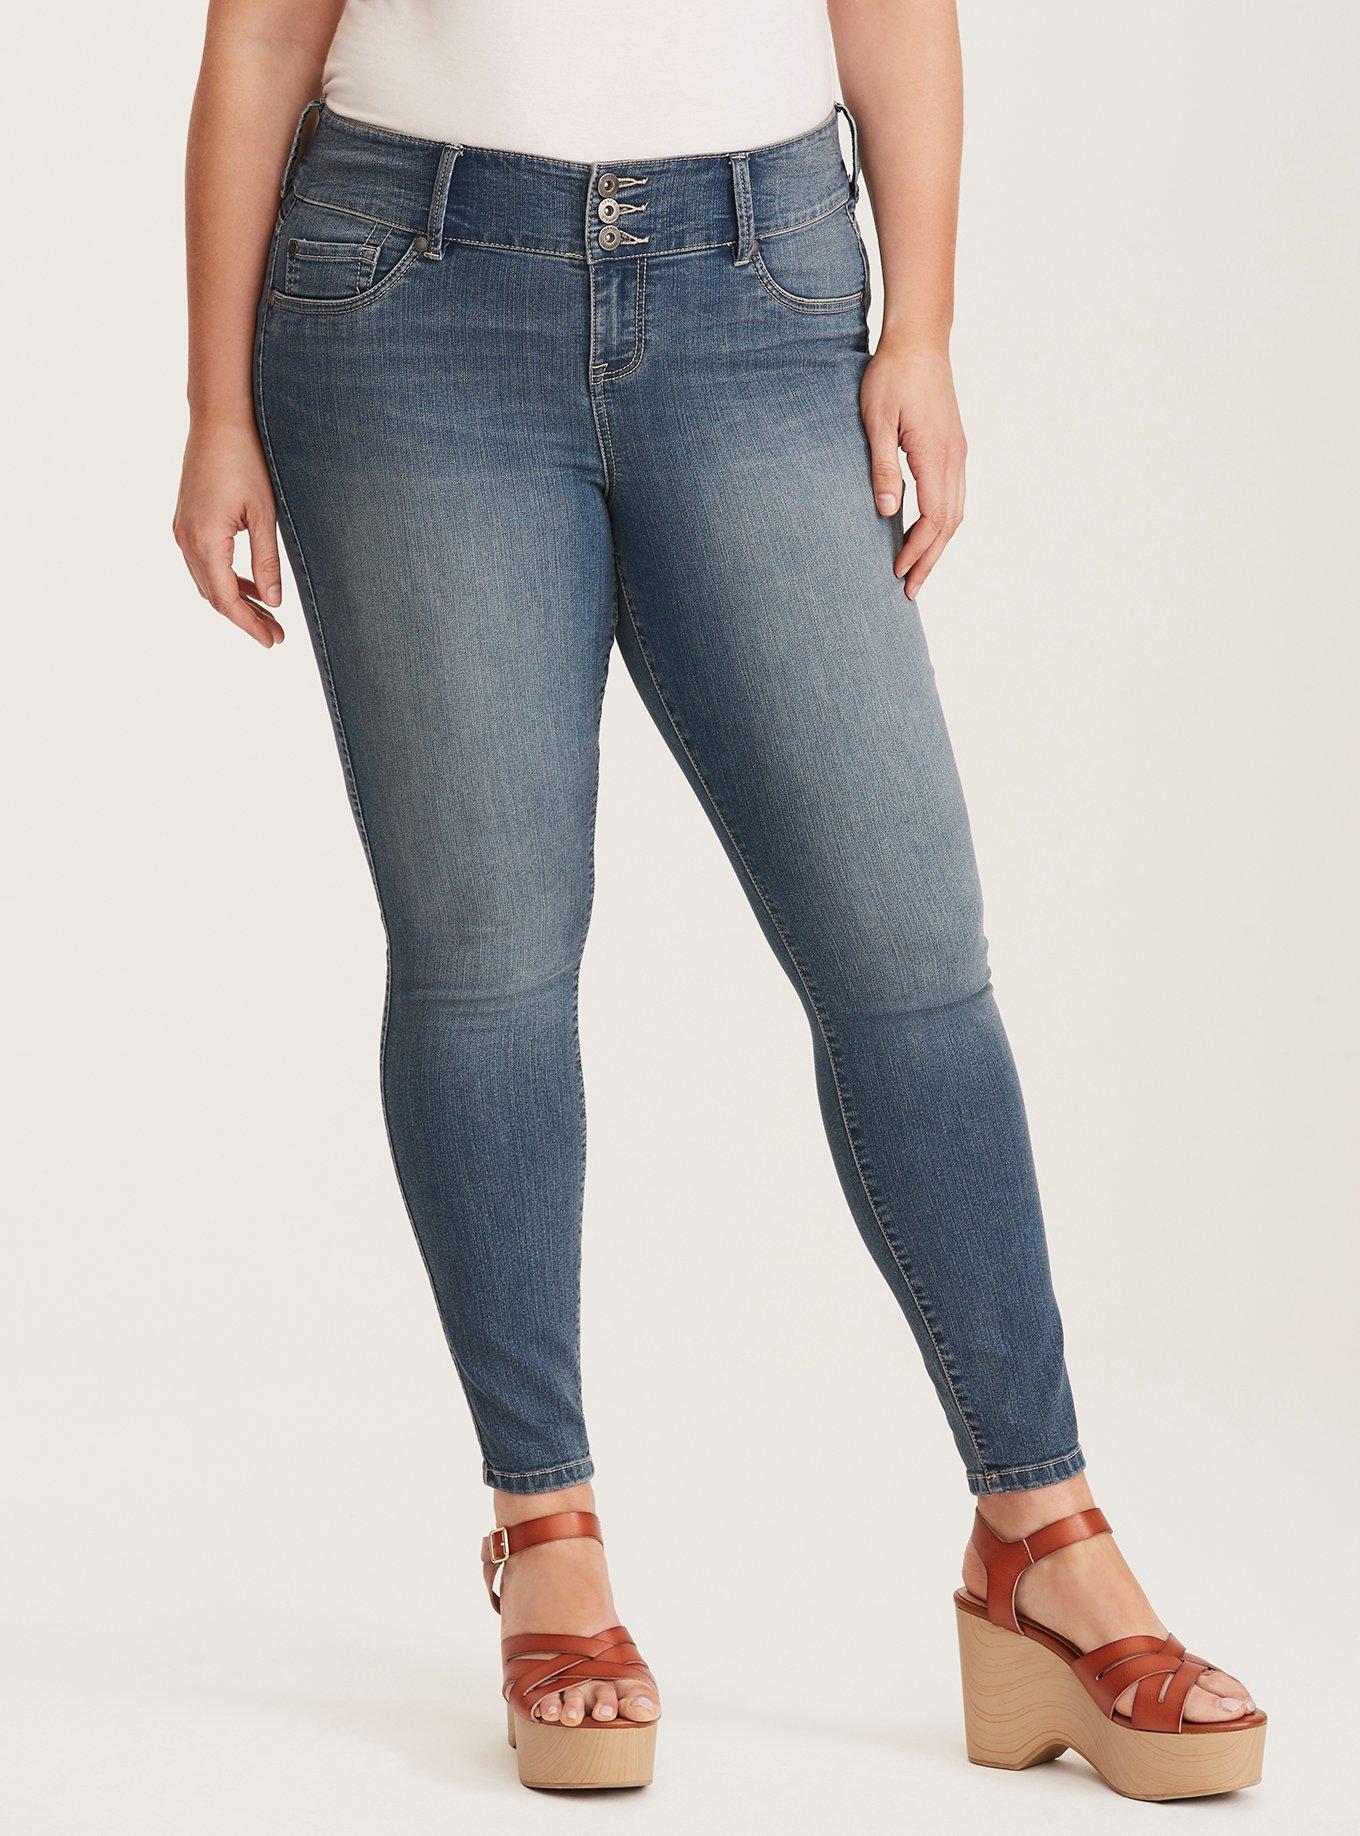 Ladies Stretch Skinny Jeggings Jeans Denim Leggings Sizes 6 - 20 UK Seller  Stock